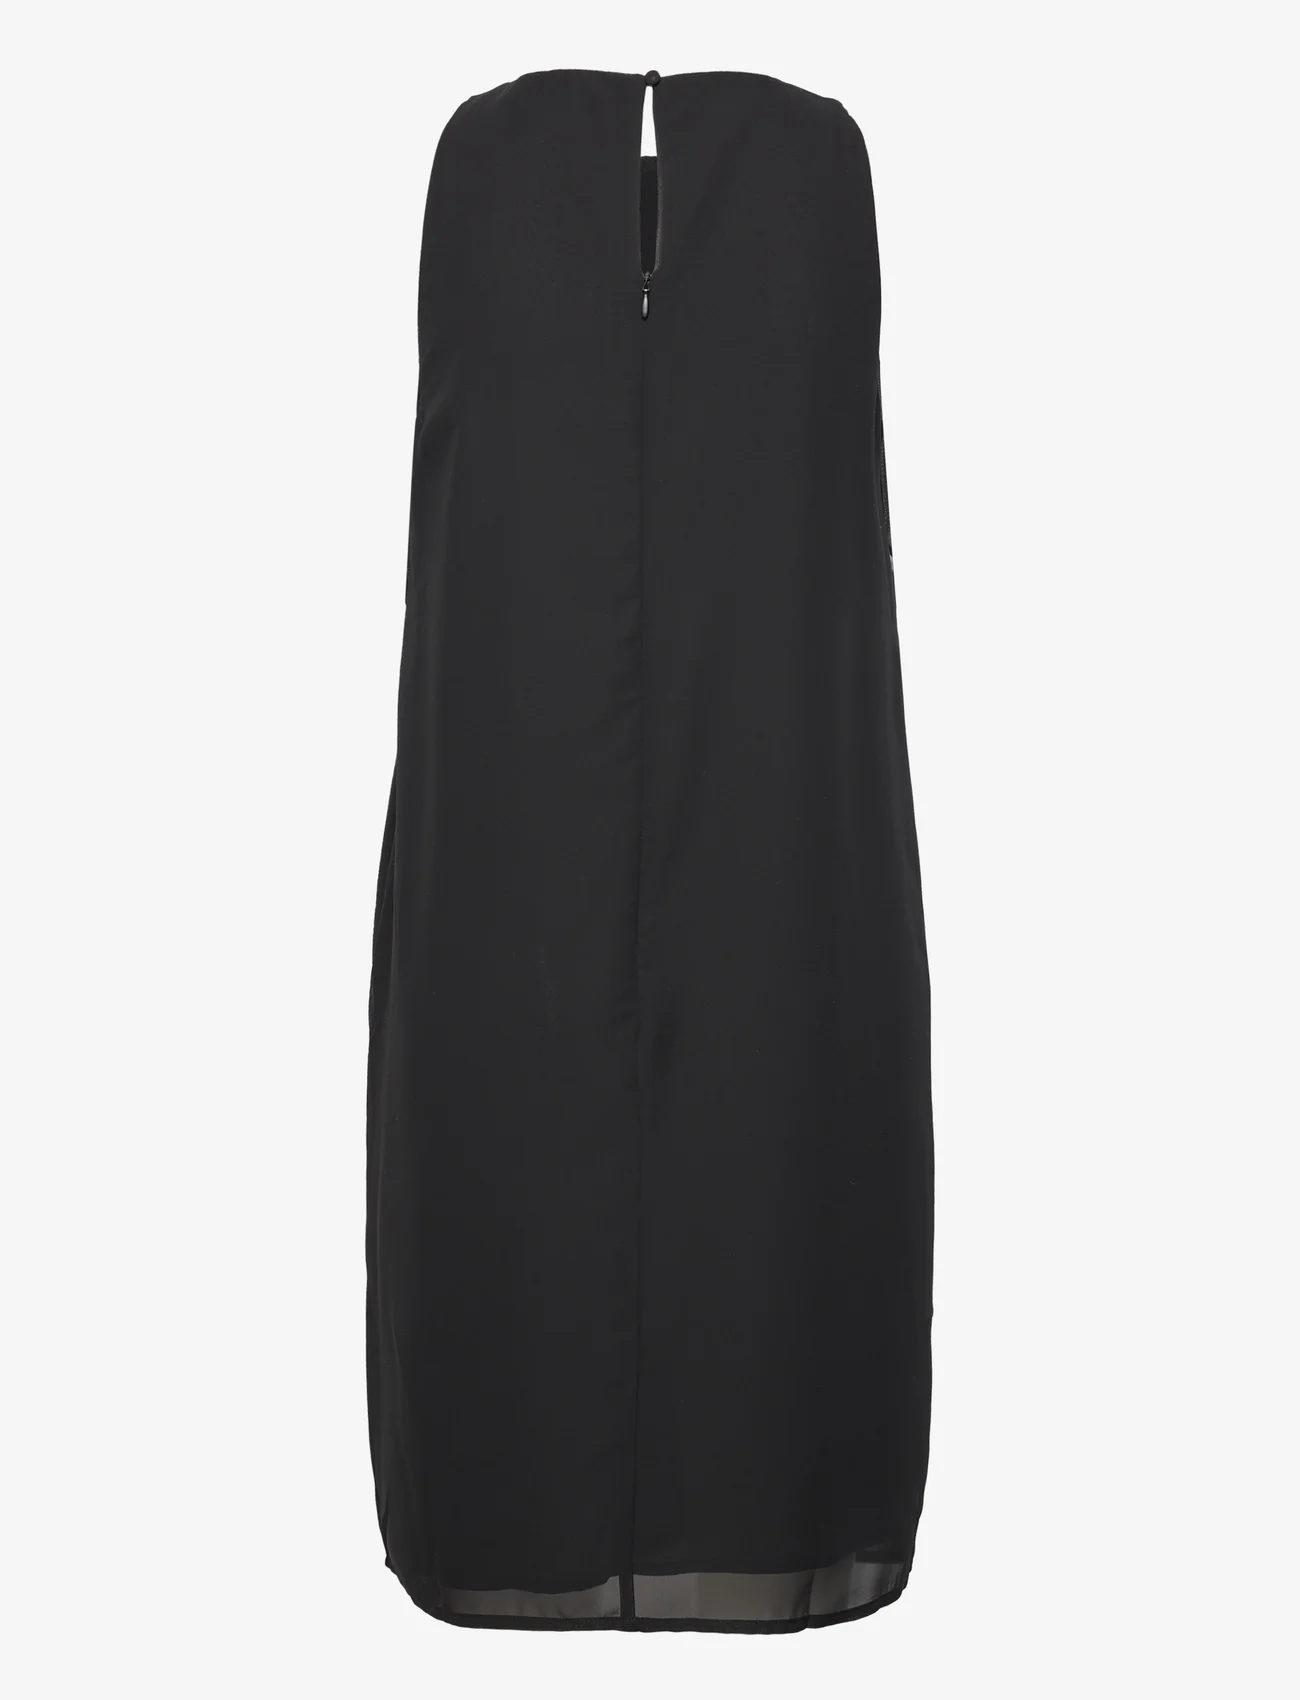 Esprit Casual - Dresses light woven - festtøj til outletpriser - black - 1